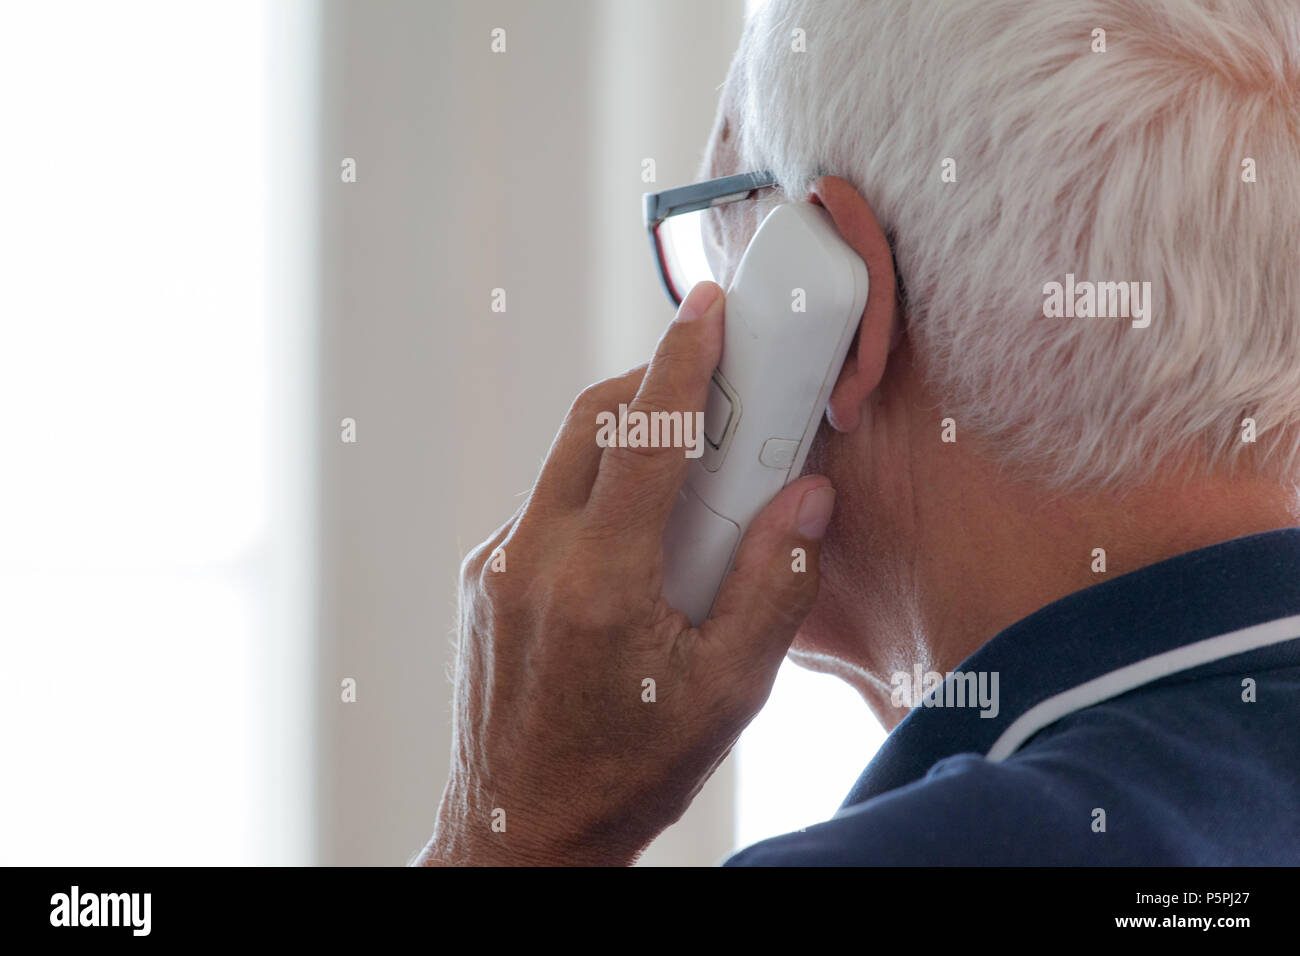 Soy persona ältere Telefon Hilfe suchend, anciano en el teléfono buscando ayuda Foto de stock